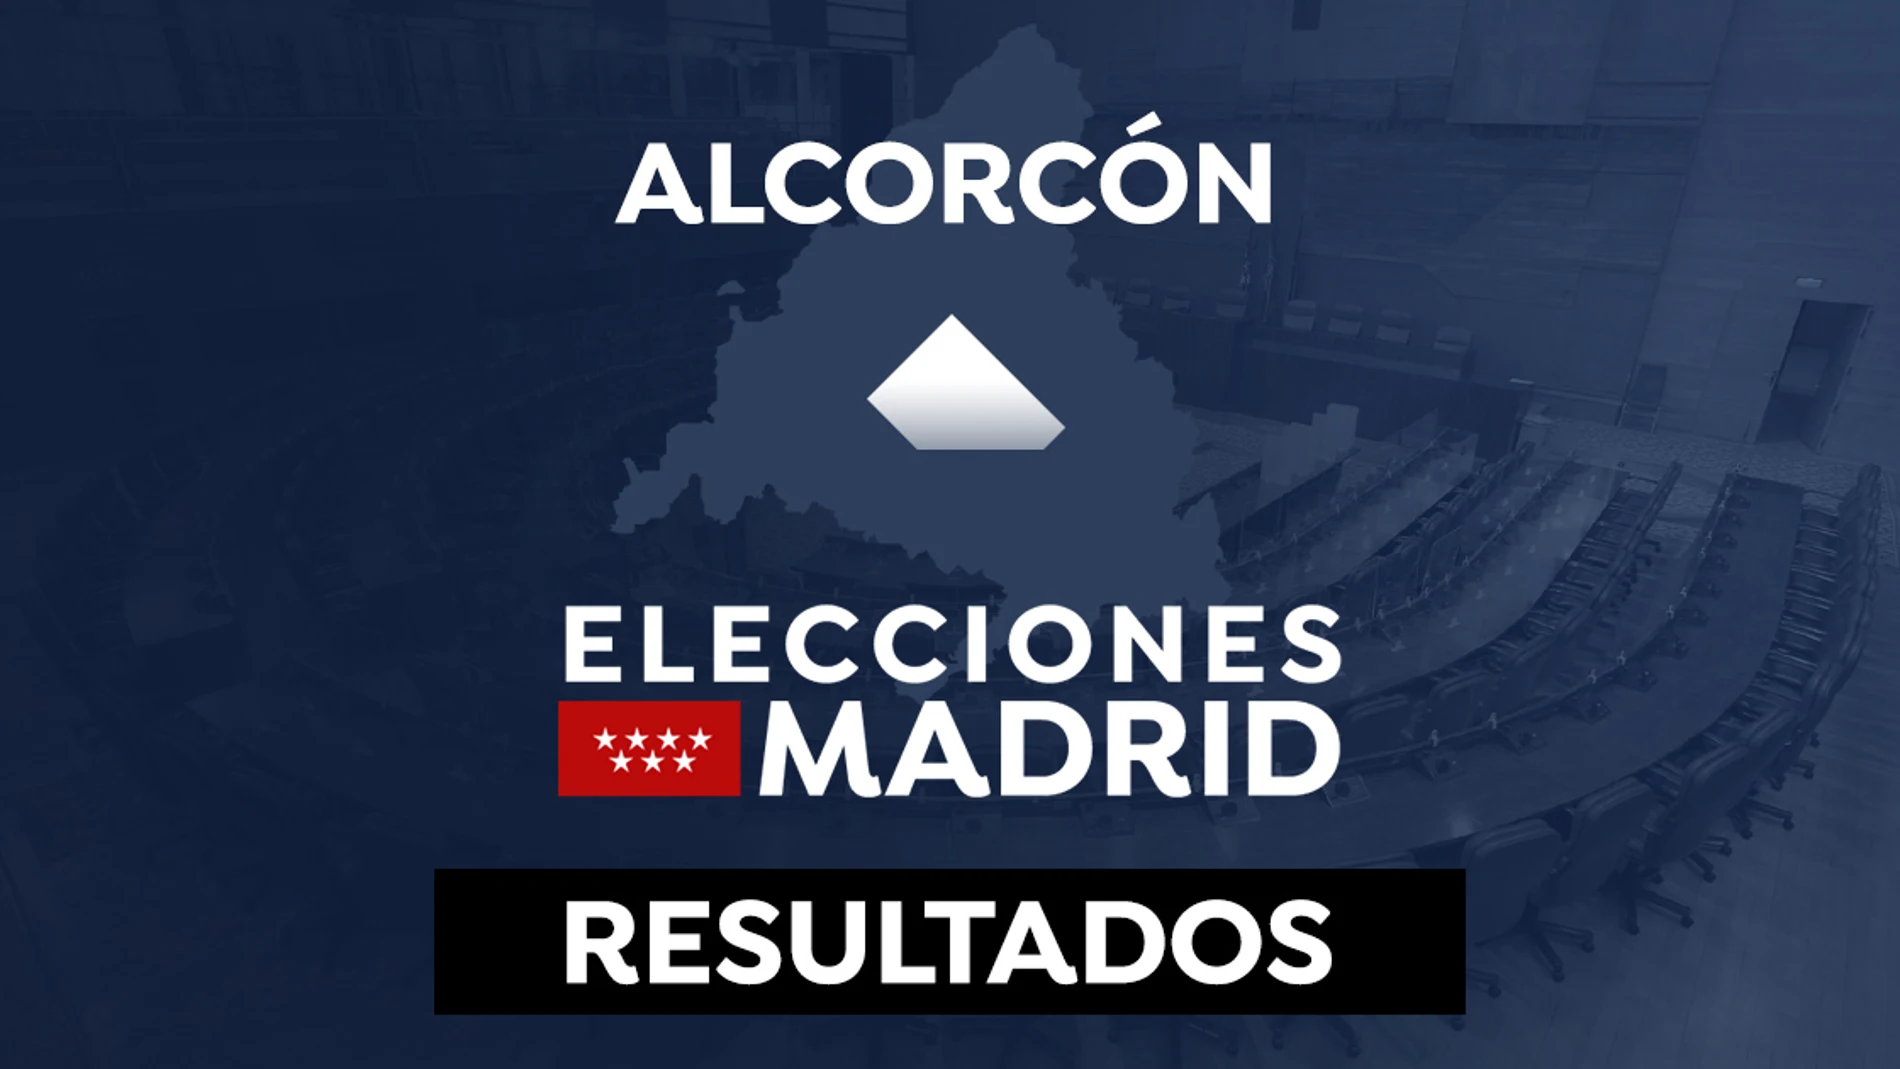 Resultado de las elecciones de Madrid 2021 en Alcorcón